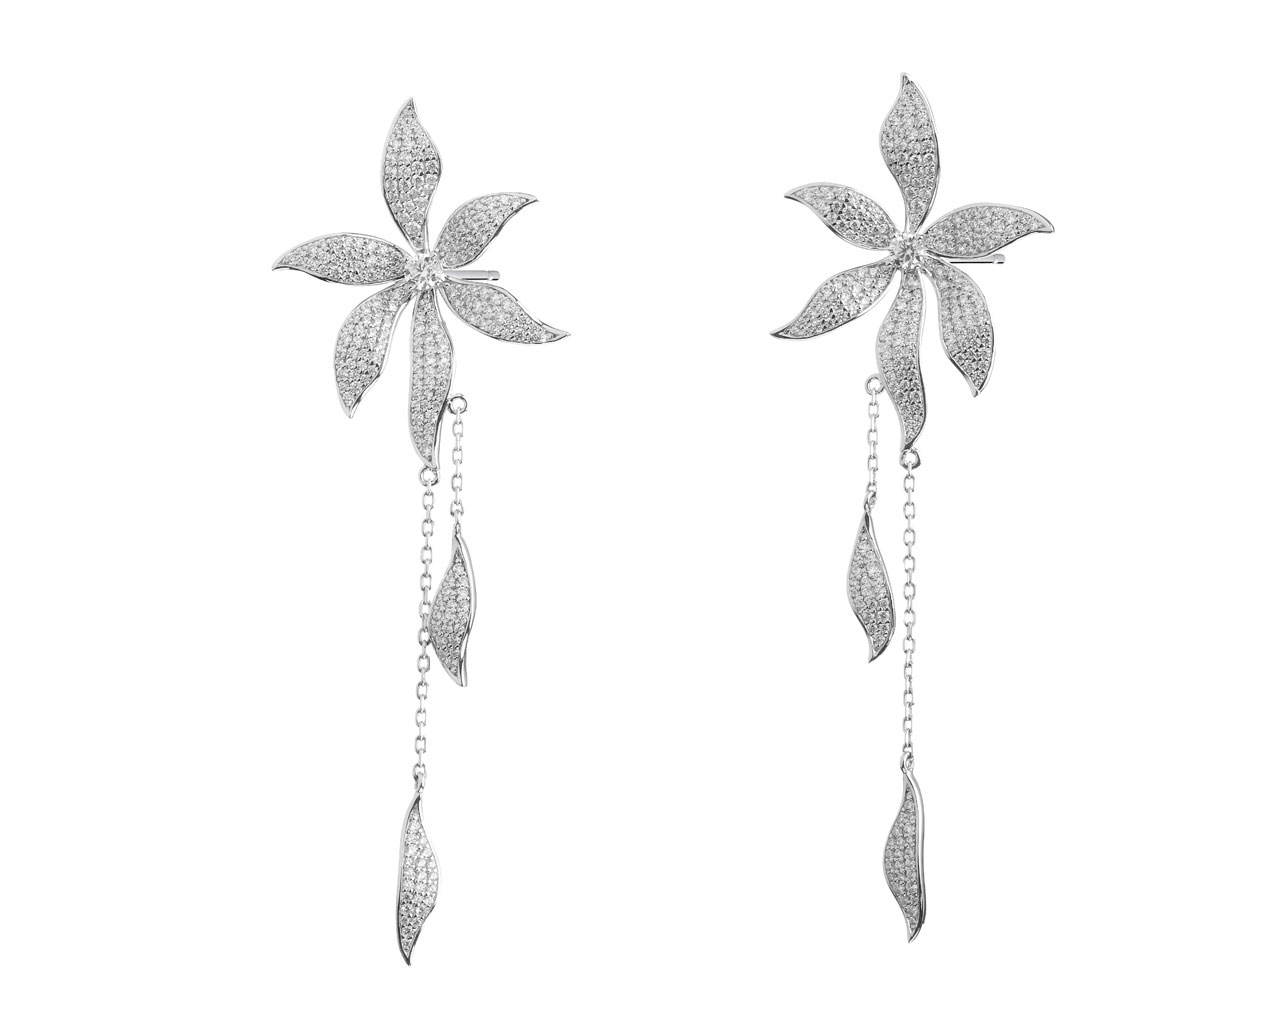 Kolczyki srebrne z cyrkoniami - kwiaty